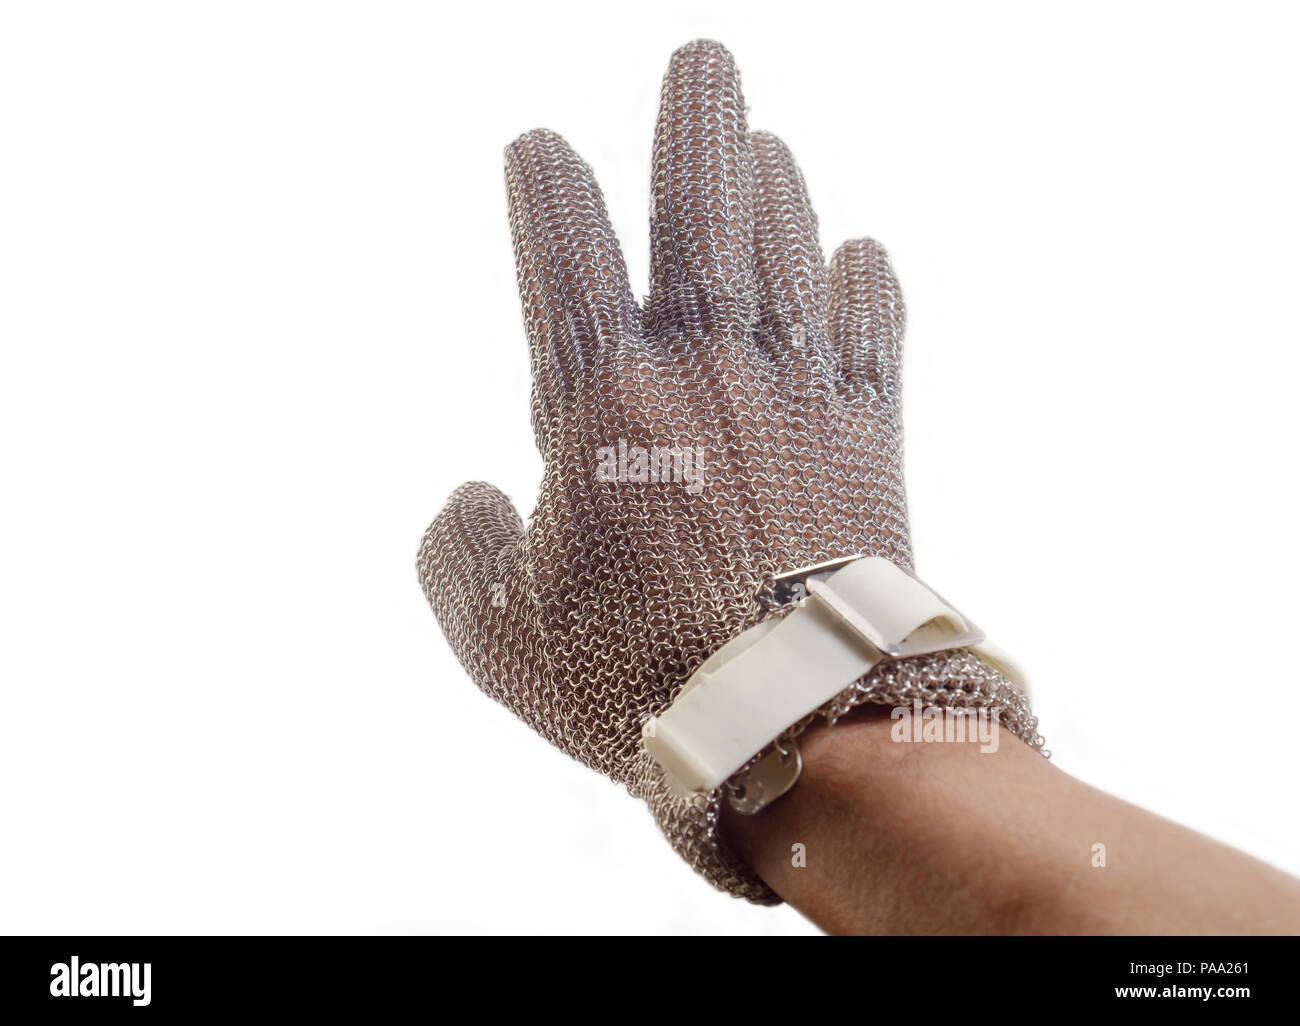 La main avec le fer mesh glove sur fond blanc. Des dispositifs de protection pour les applications industrielles. Banque D'Images